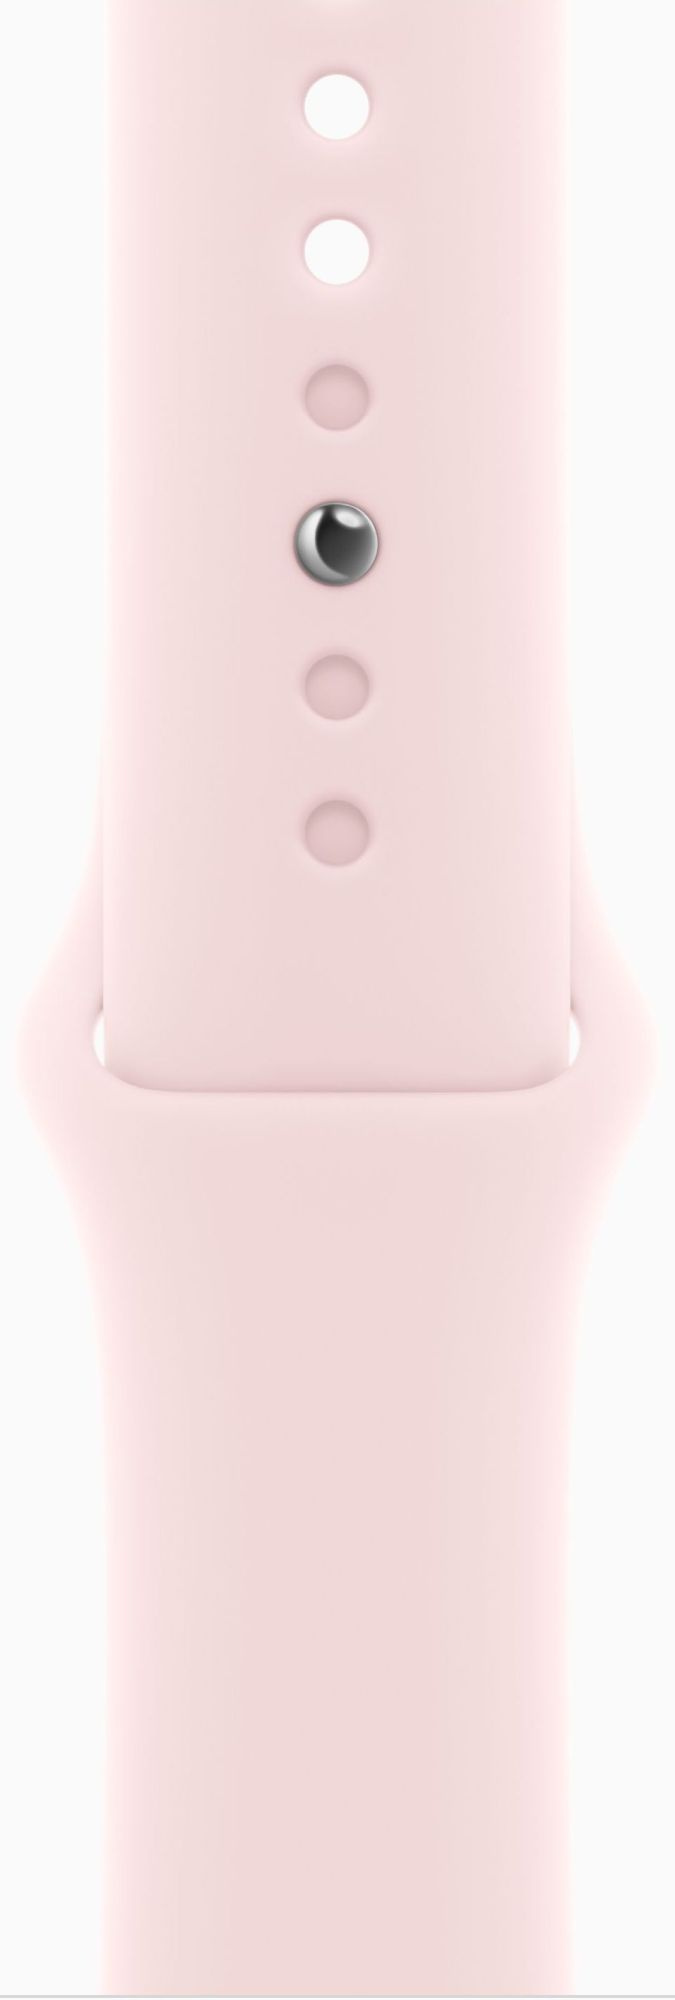 Смарт-часы Apple Watch Series 9 A2978 41мм OLED корп.розовый Sport Band рем.светло-розовый разм.брасл.:150-200мм (MR943LL/A)